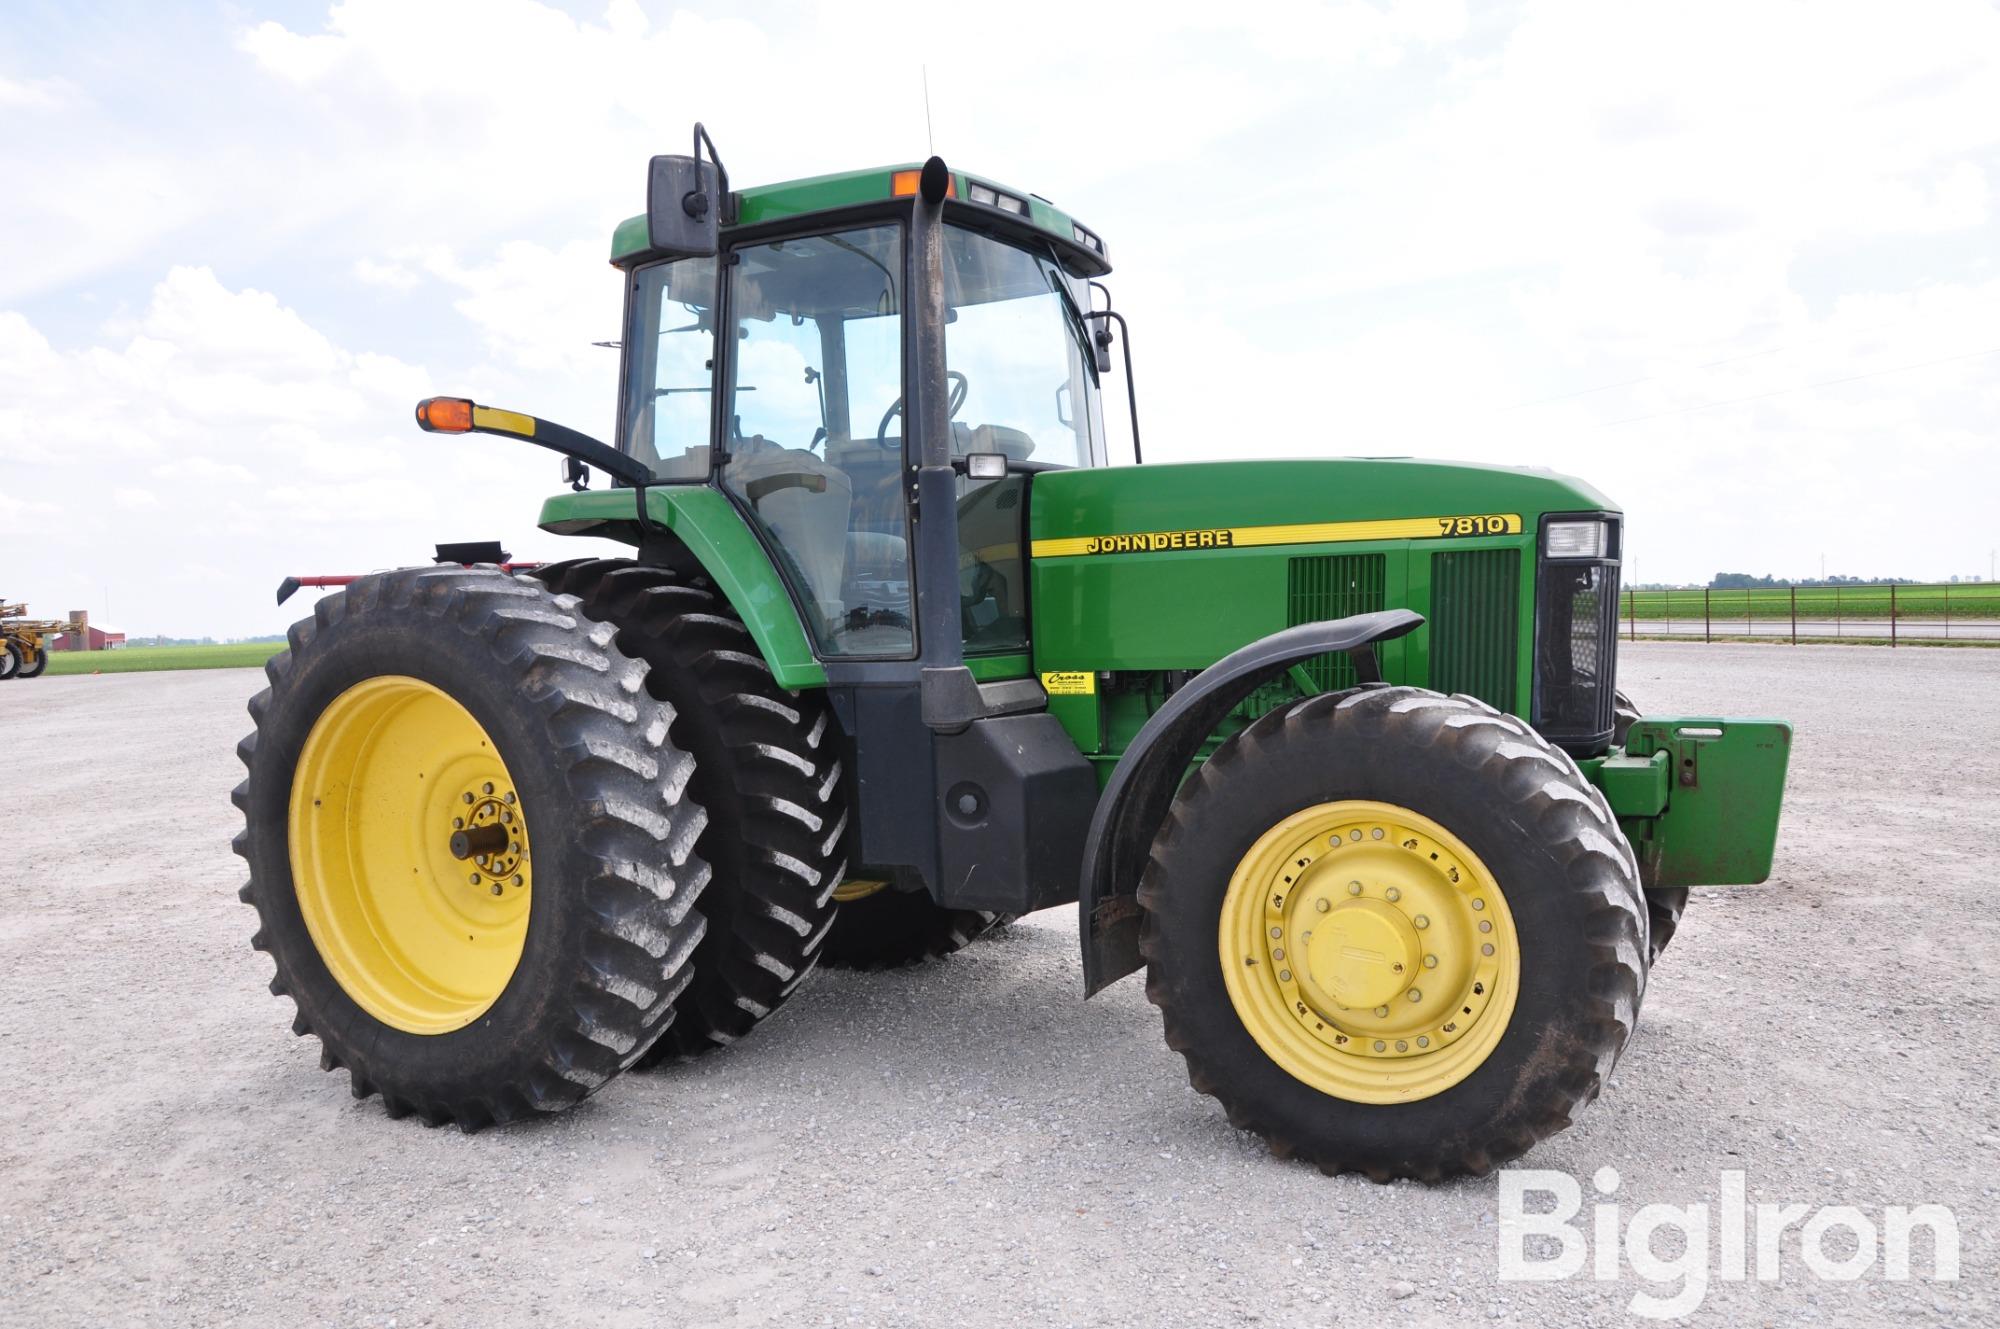 2002 John Deere 7810 MFWD Tractor BigIron Auctions